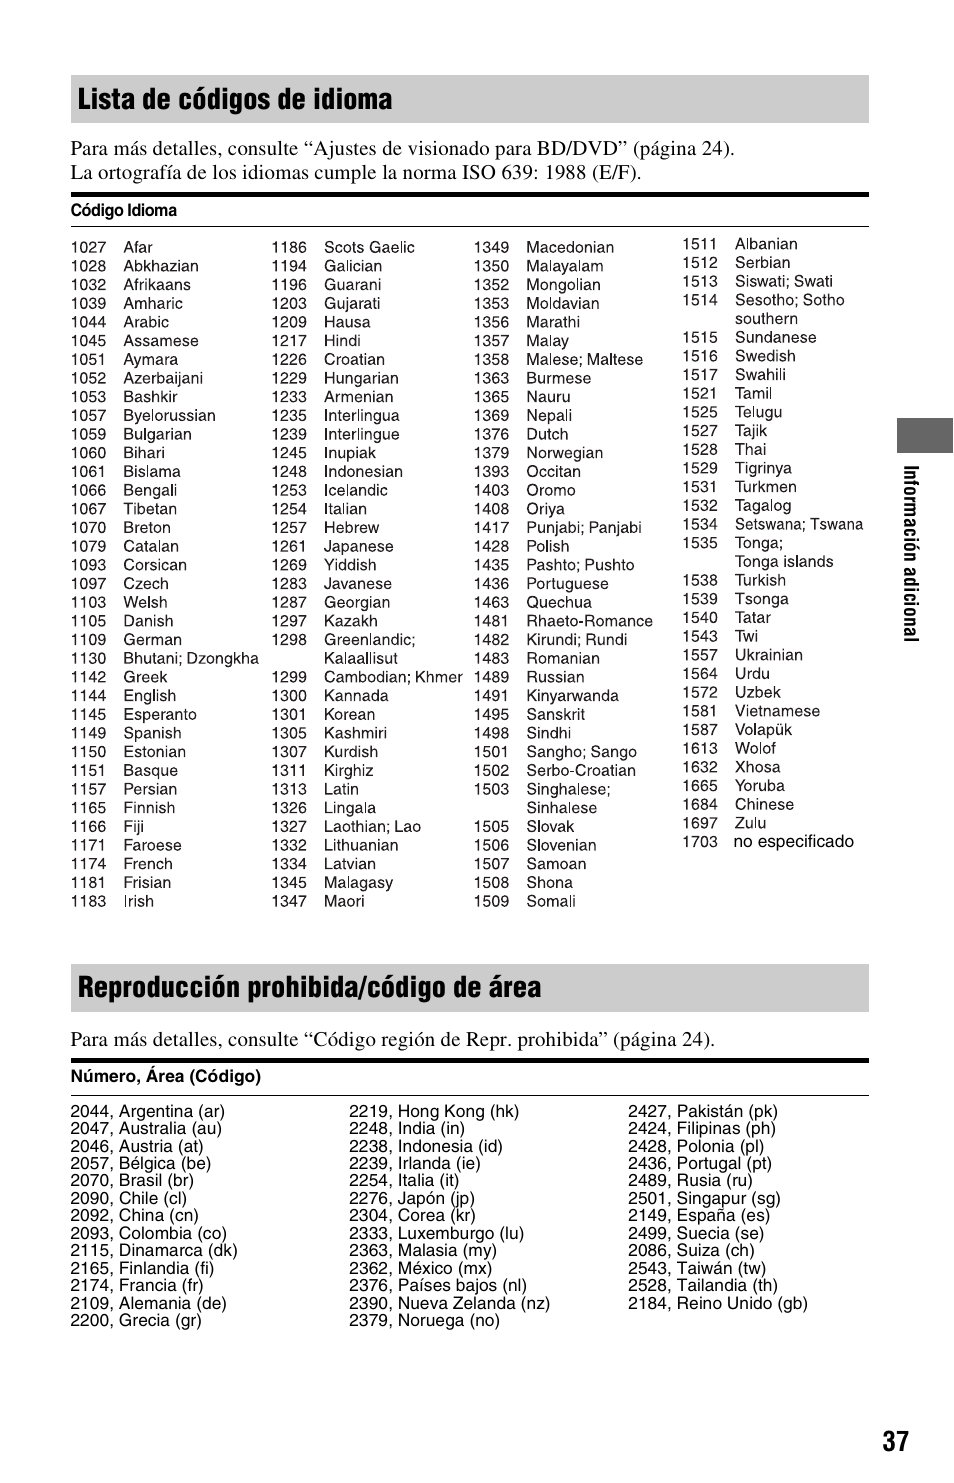 Lista de códigos de idioma, Reproducción prohibida/código de área | Sony BDP-S370 Manual del usuario | Página 37 / 39